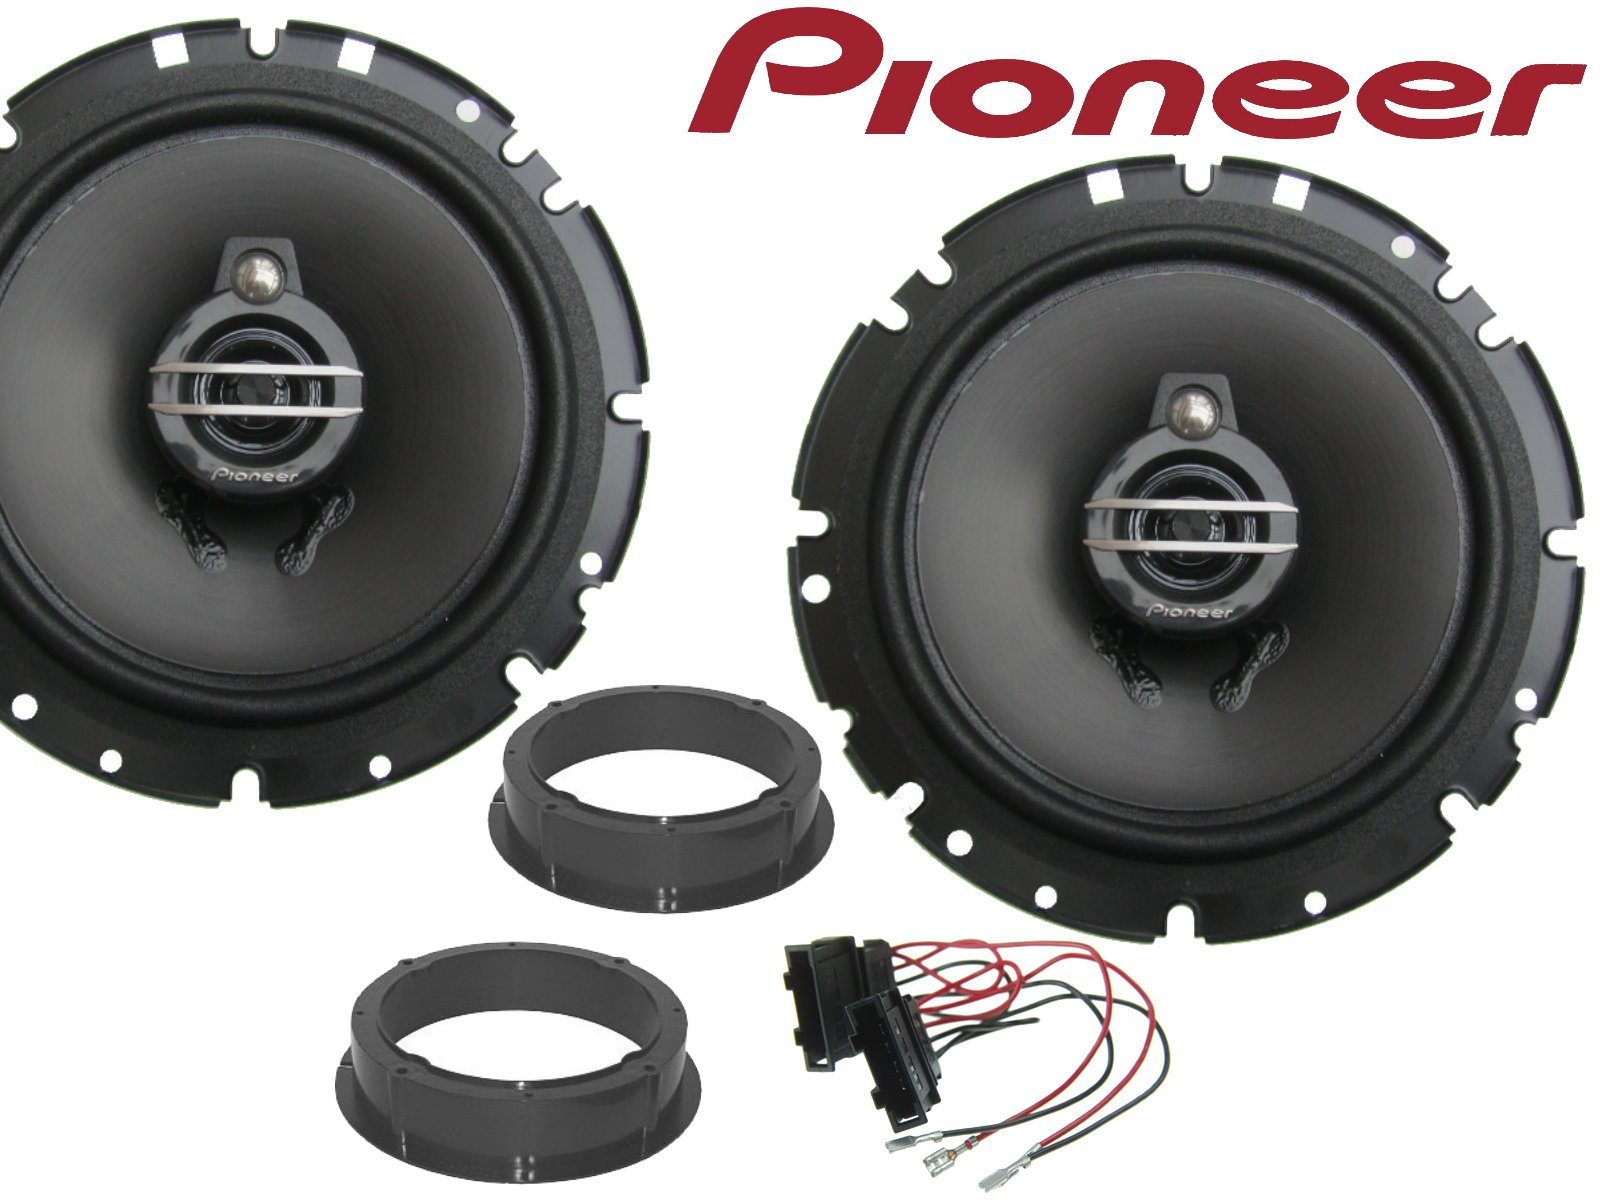 DSX Pioneer 3Wege passend für VW Touran Bj 03-14 Lauts Auto-Lautsprecher (40 W)